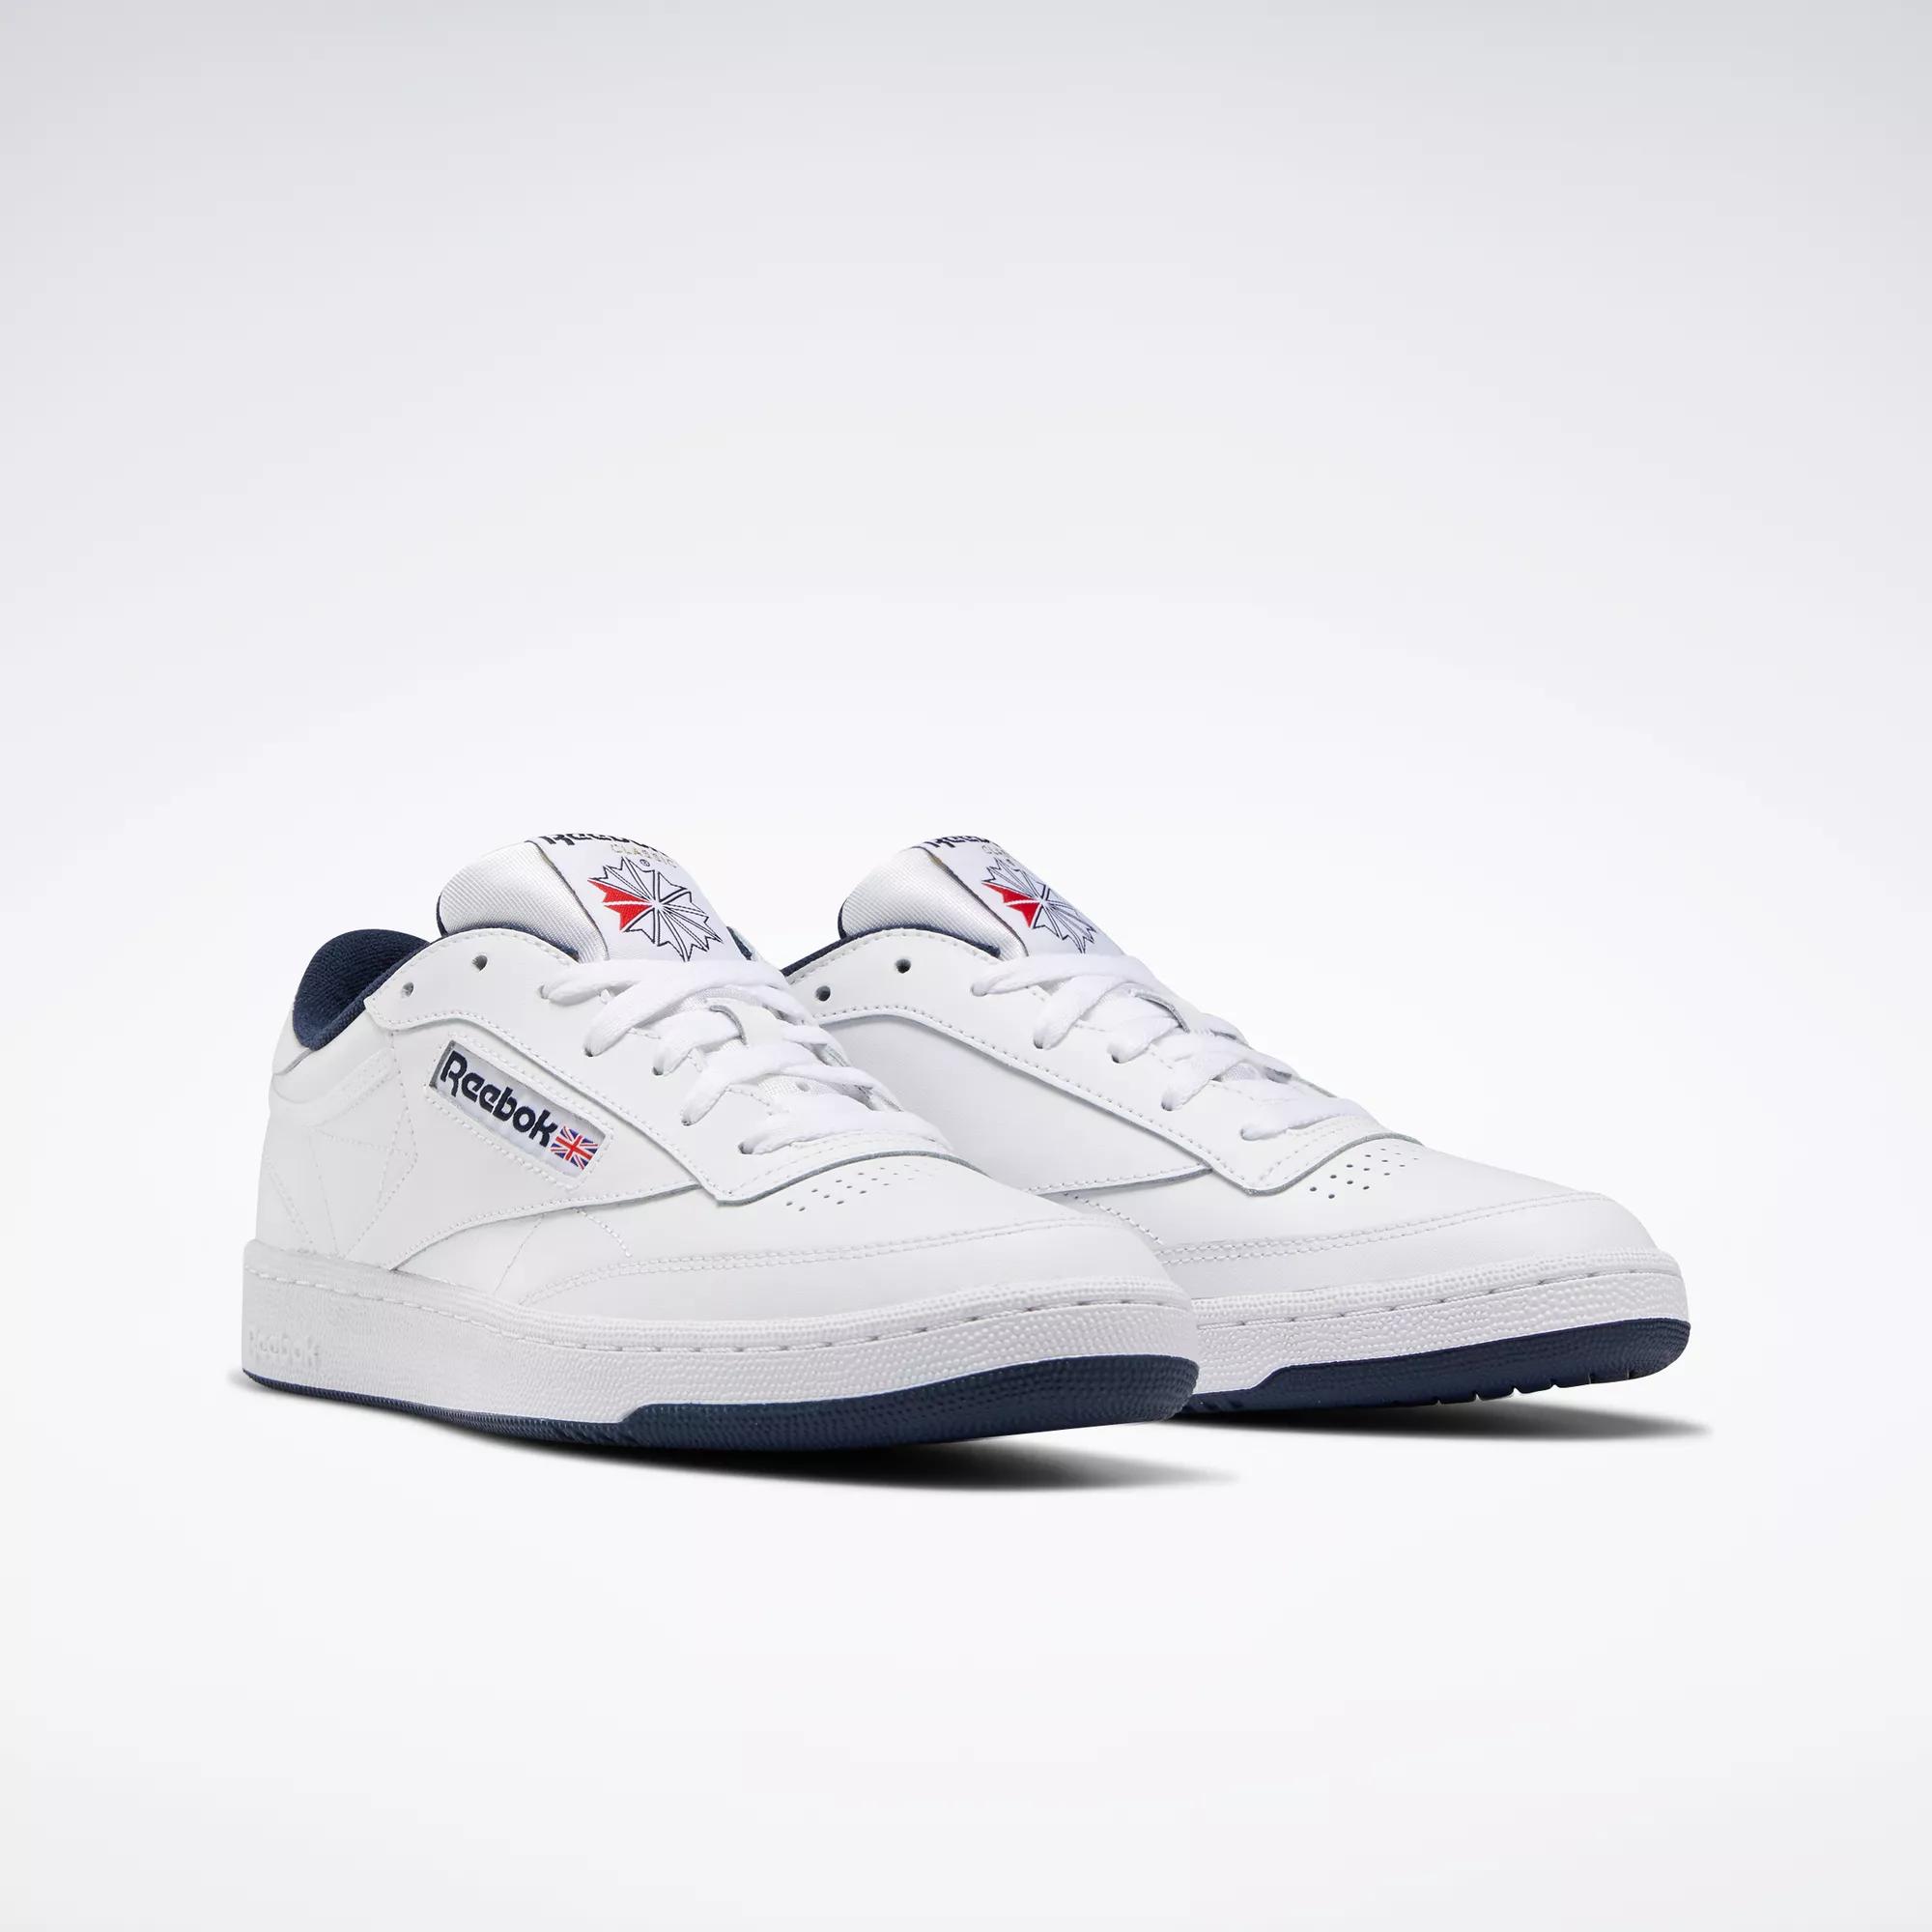  Reebok Men's Club C Sneaker,White/Navy,7 M